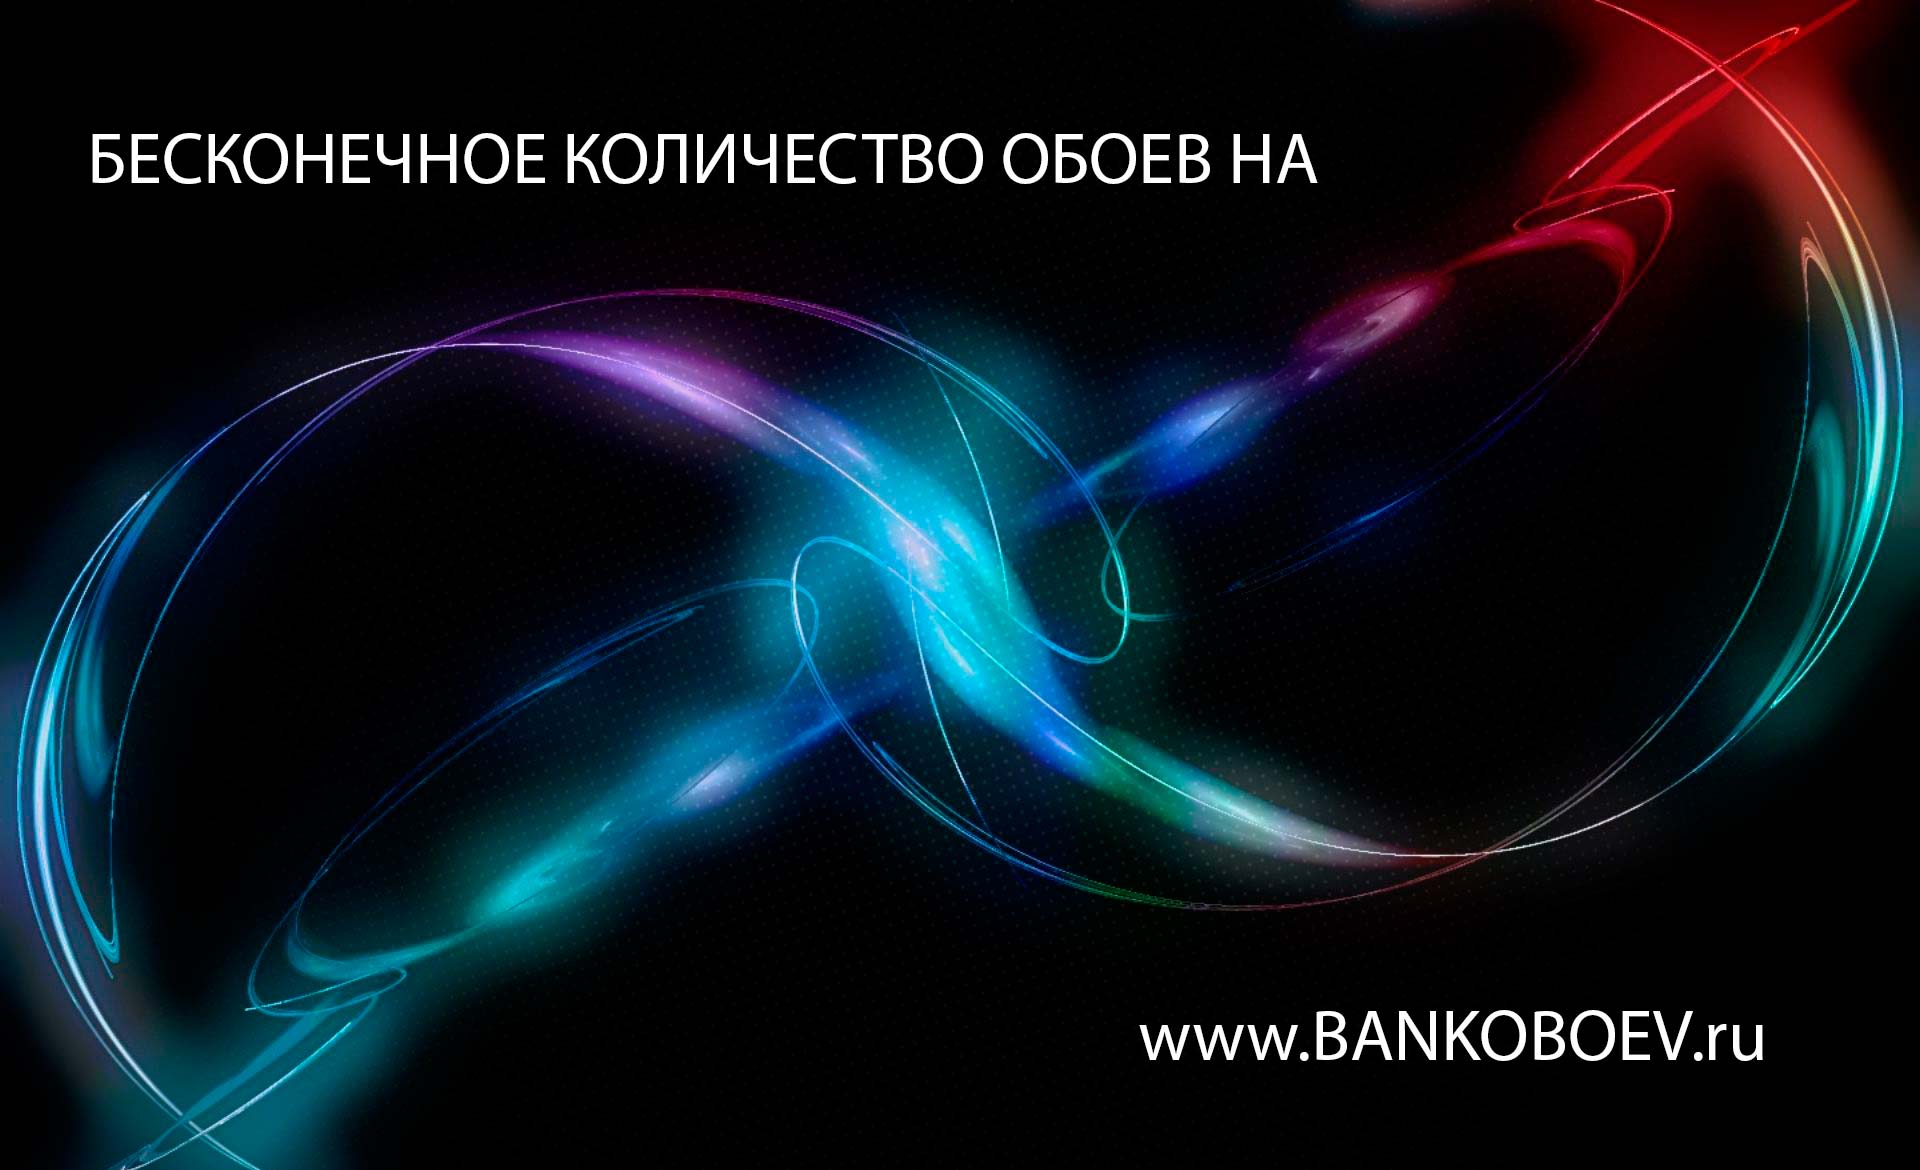 Bankoboev Ru Image Ndu0mzi Jpg